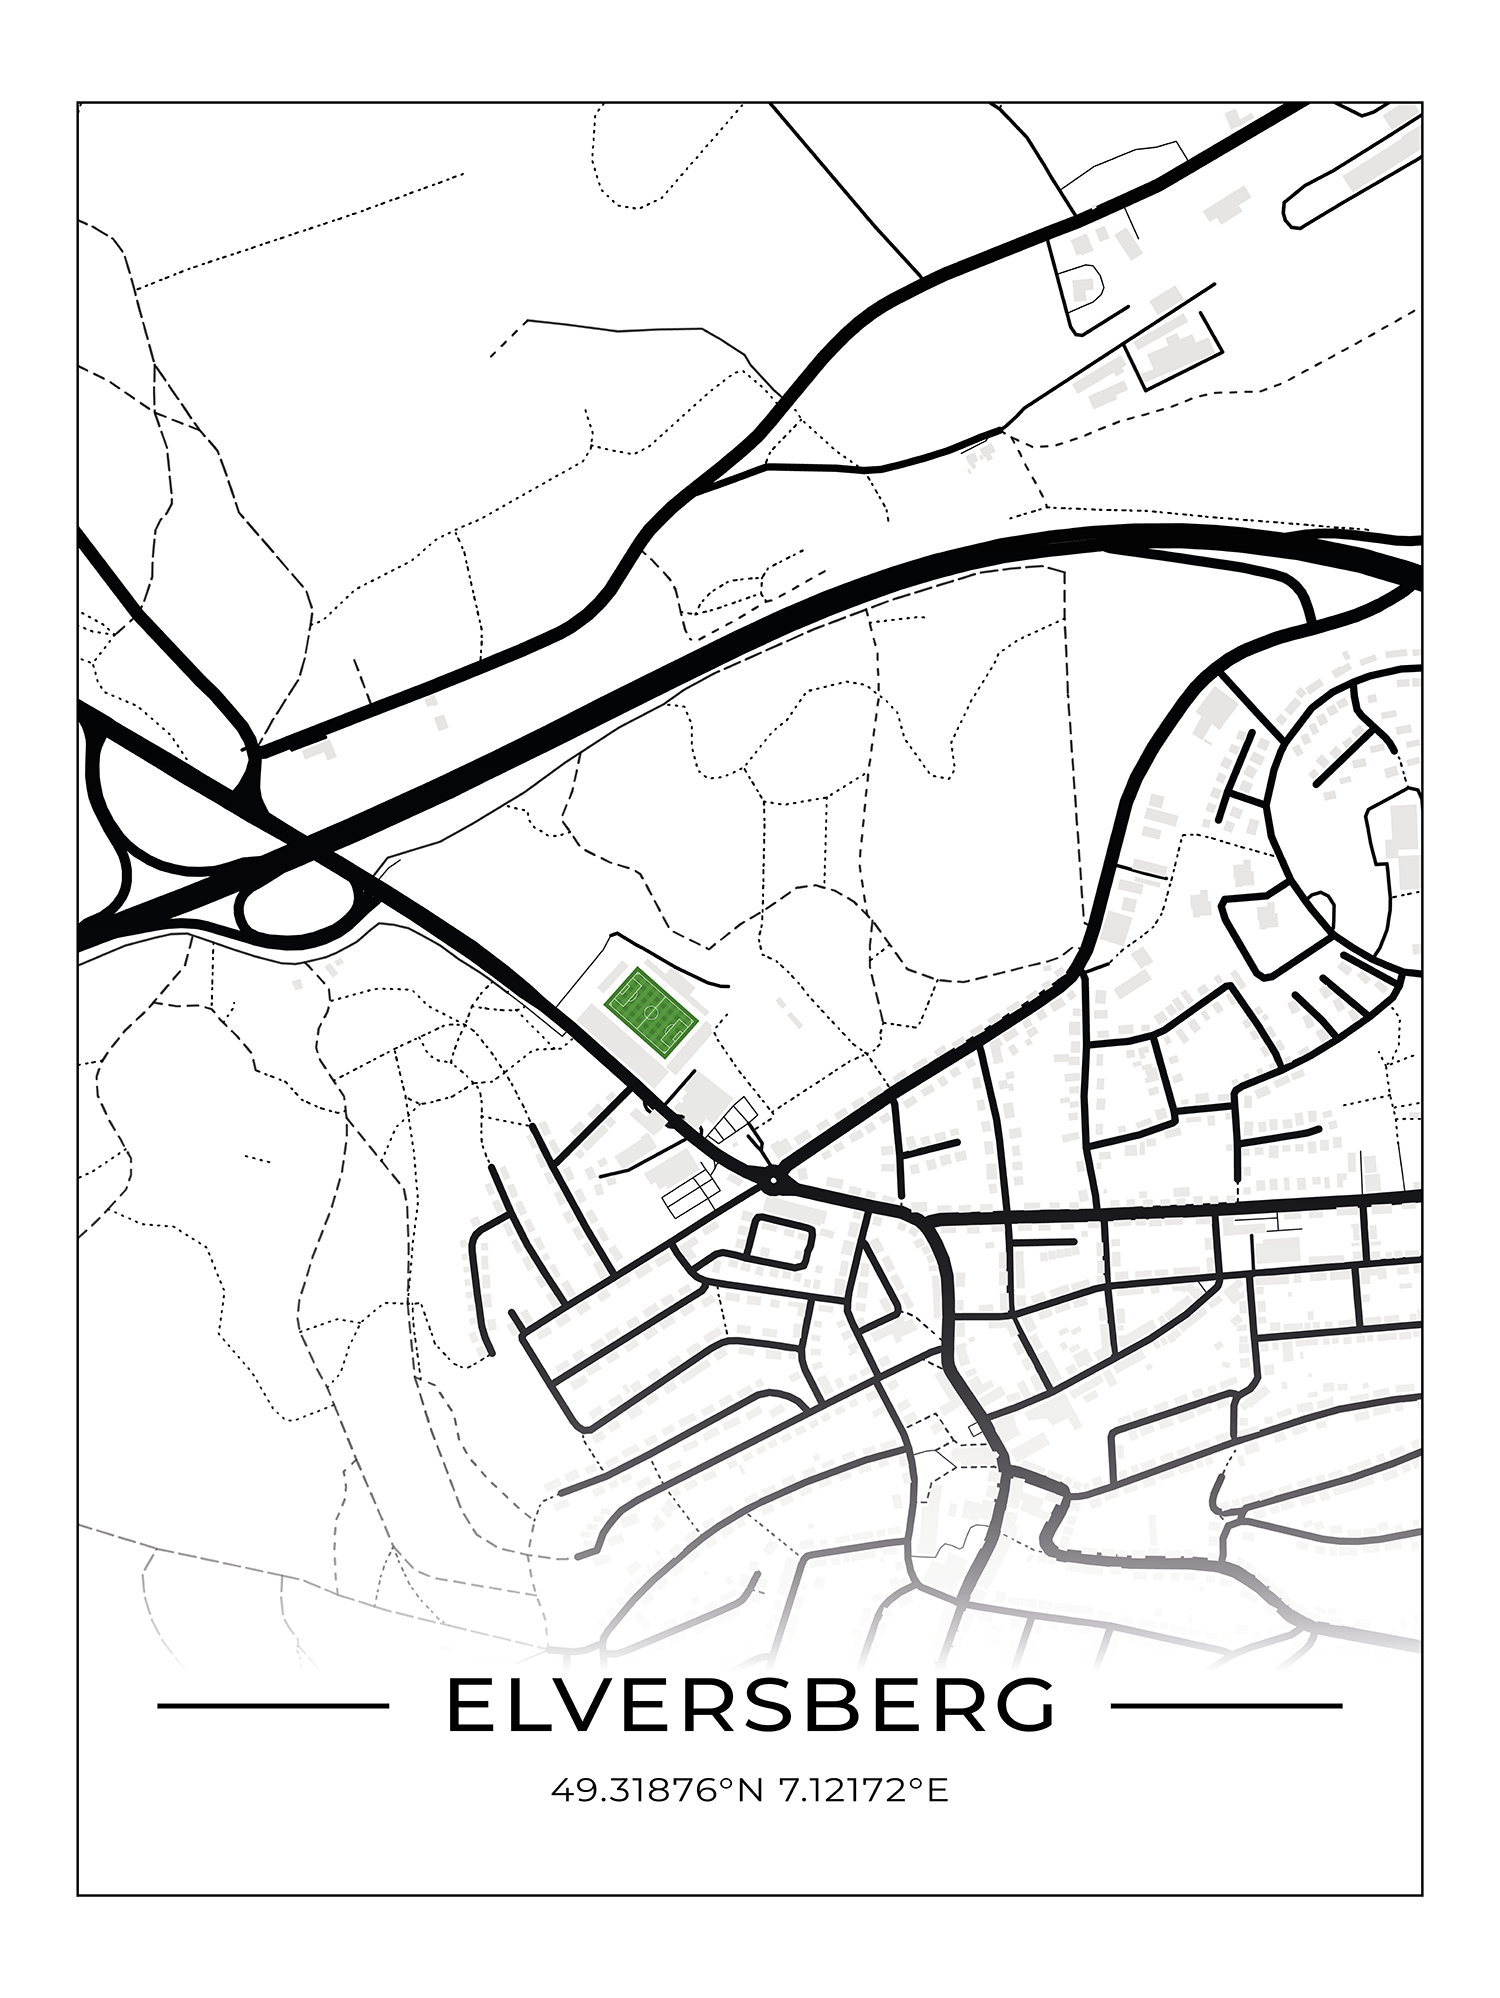 Stadion Poster Elversberg, Fußball Karte, Fußball Poster